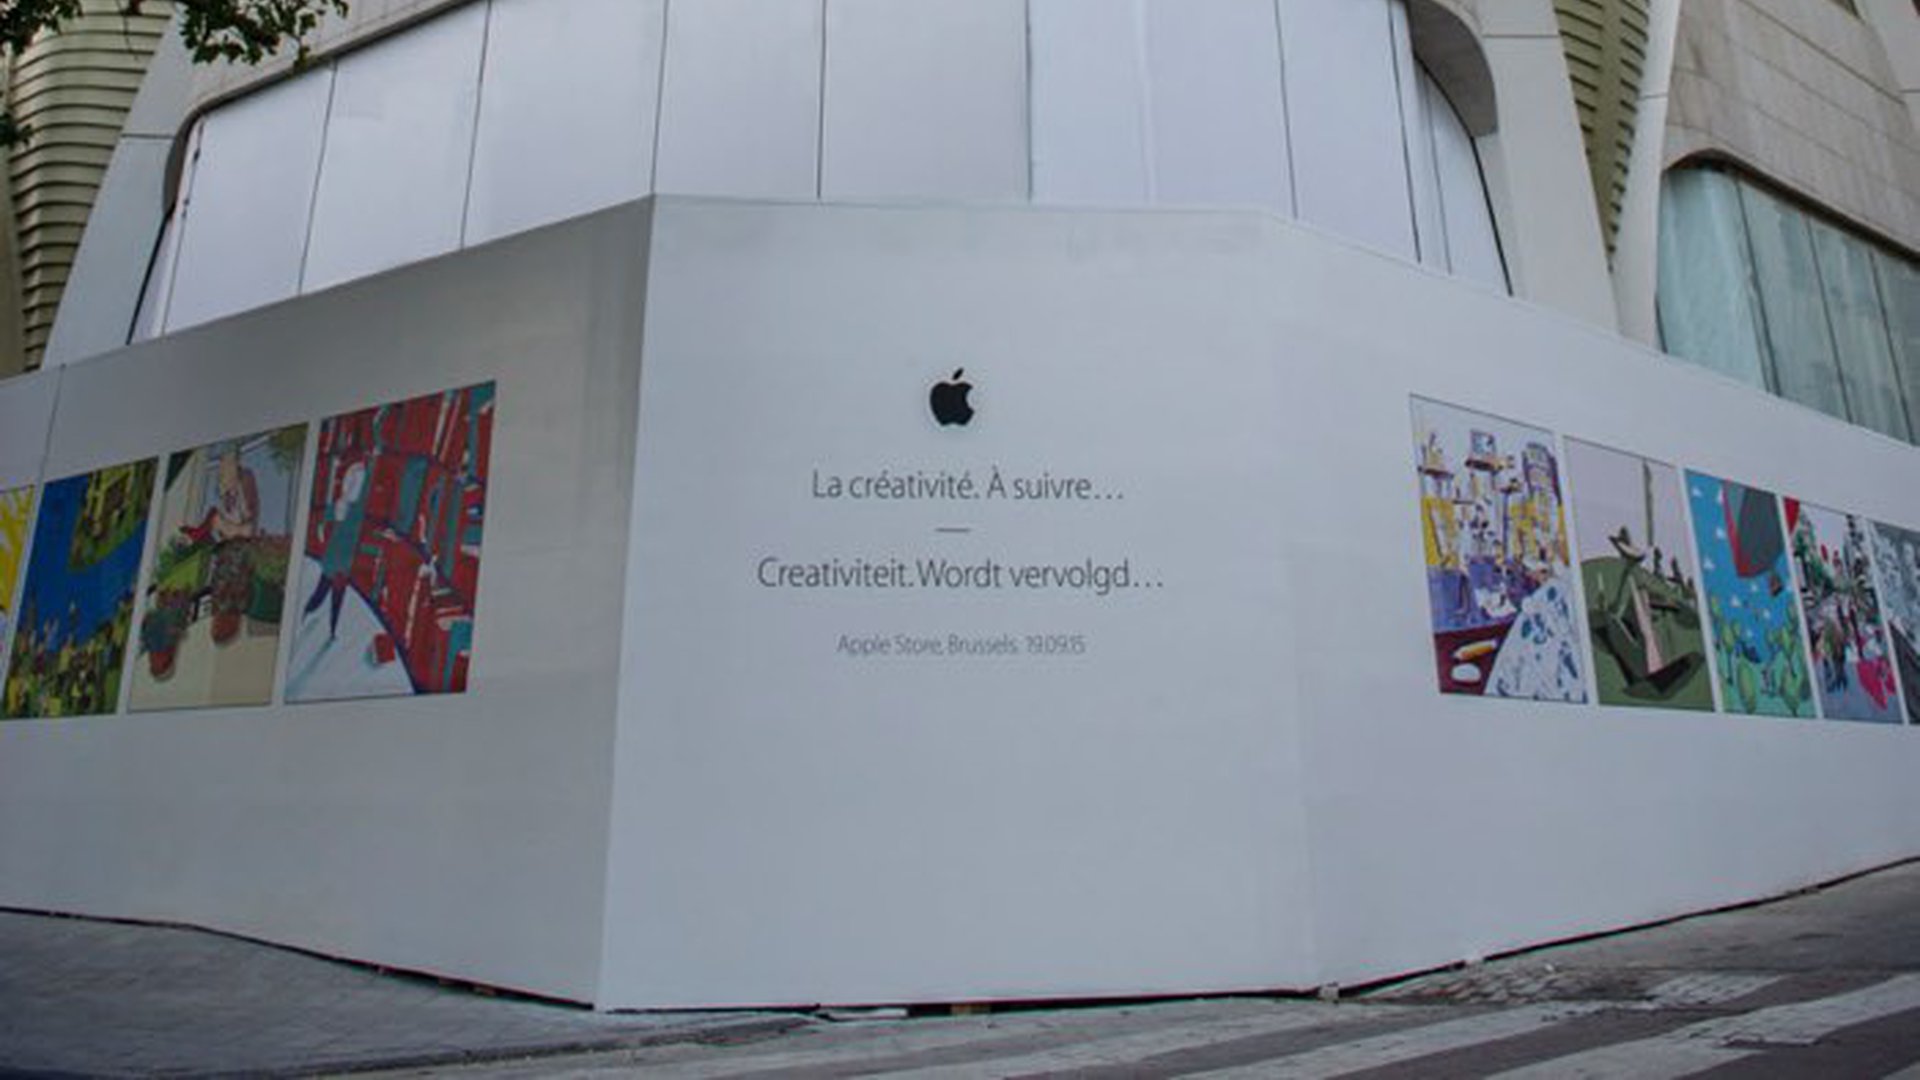 Apple Store - Brussels, Belgium